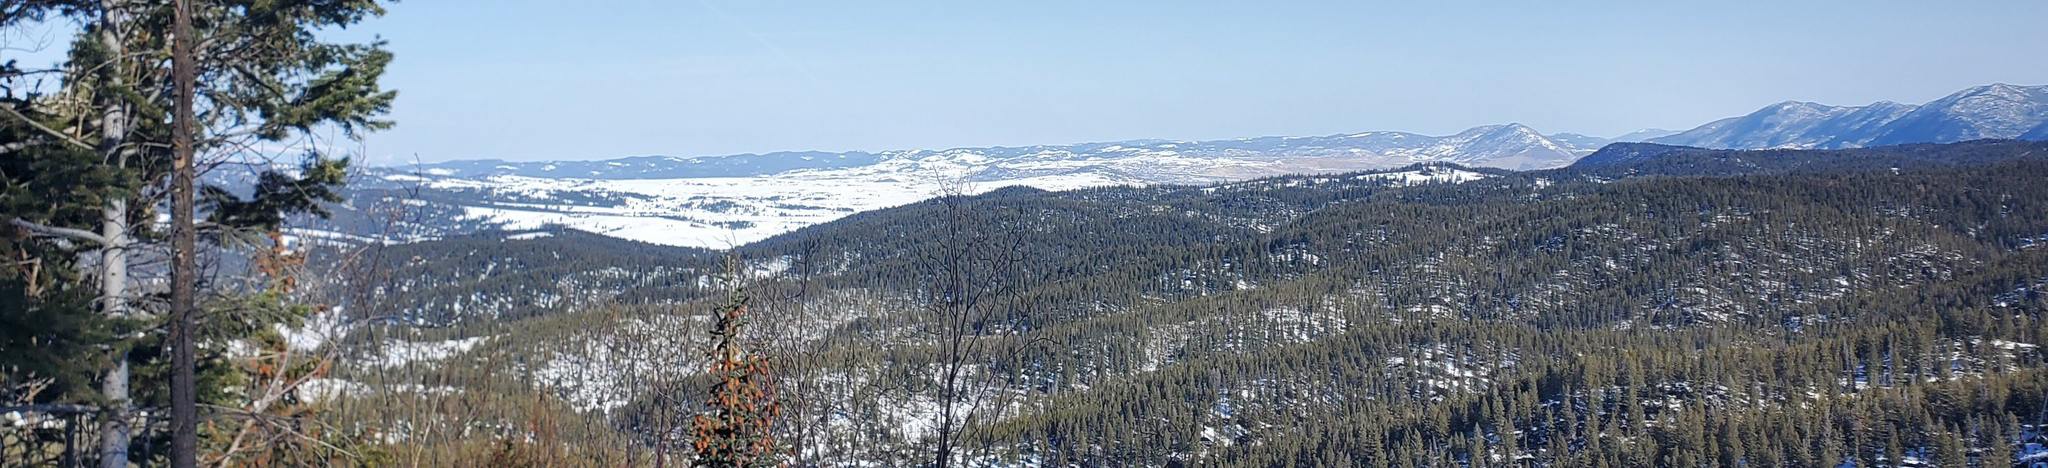 Winter scene over Butte.